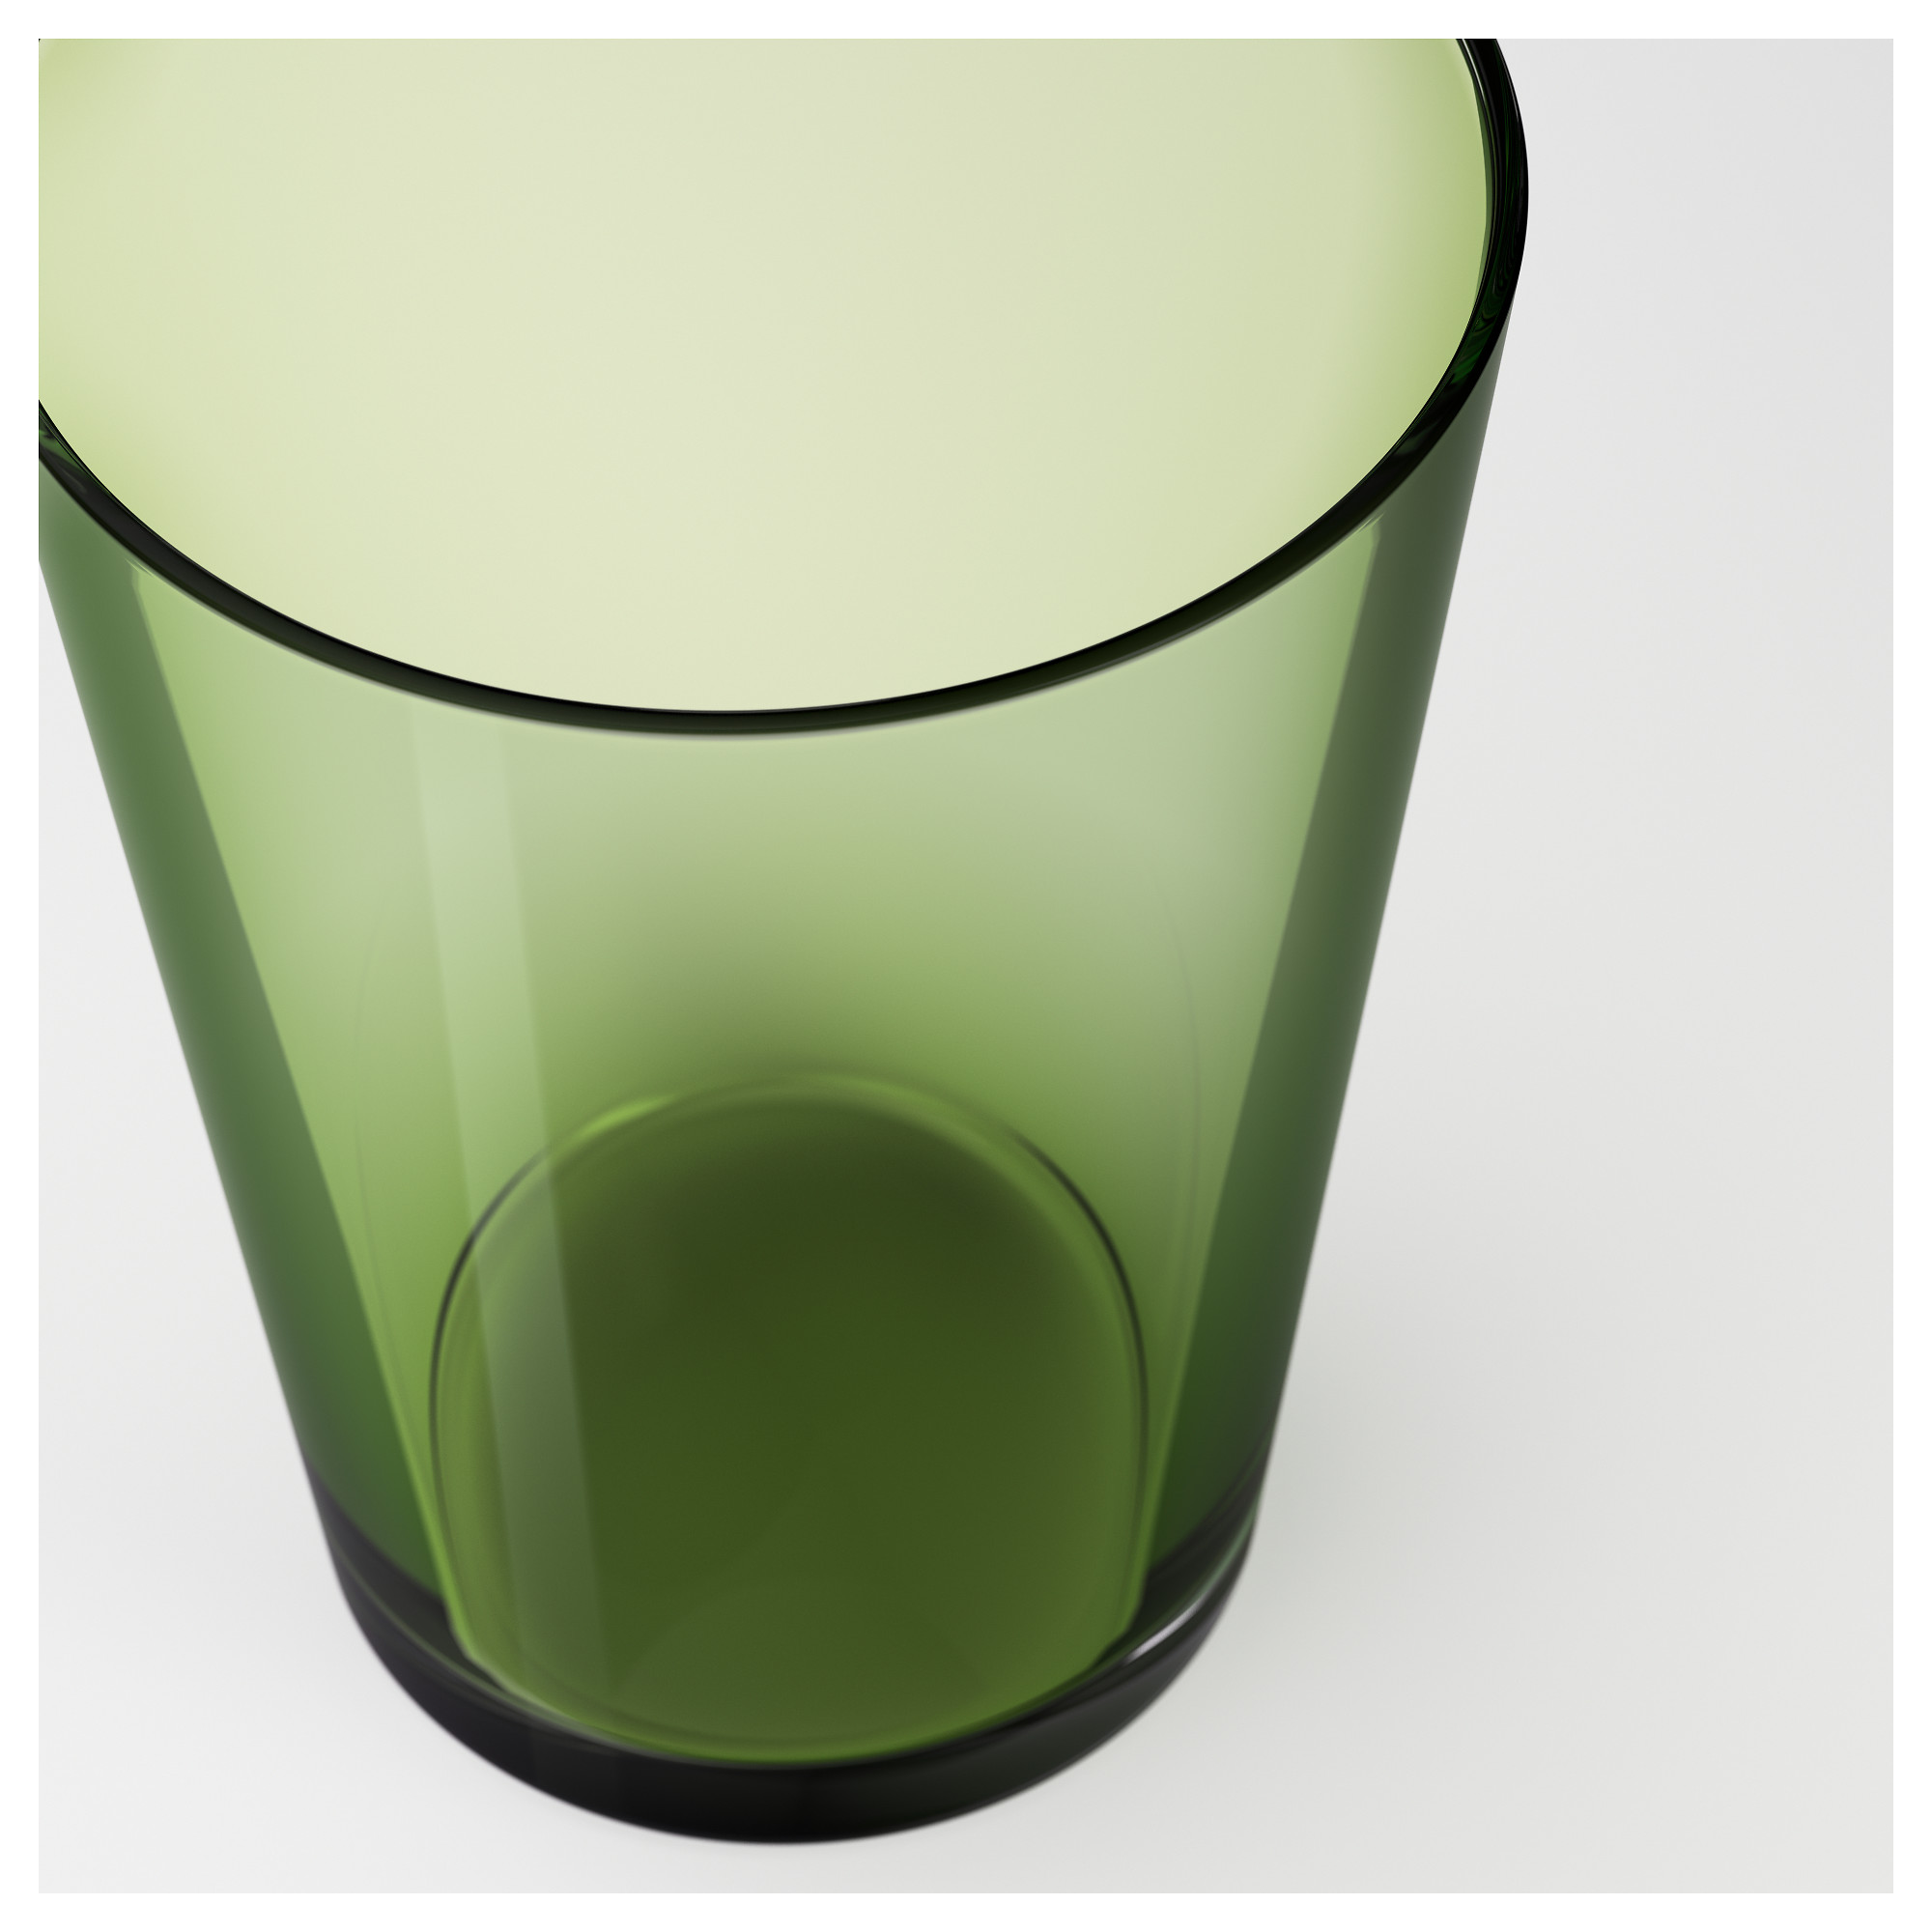 Стакан с зеленой водой. Ikea зеленые стаканы. Икеа ПОКАЛ стакан зеленый. Стакан салатовый цилиндр kds051203lt. Икеа ПОКАЛ бокал зеленый.